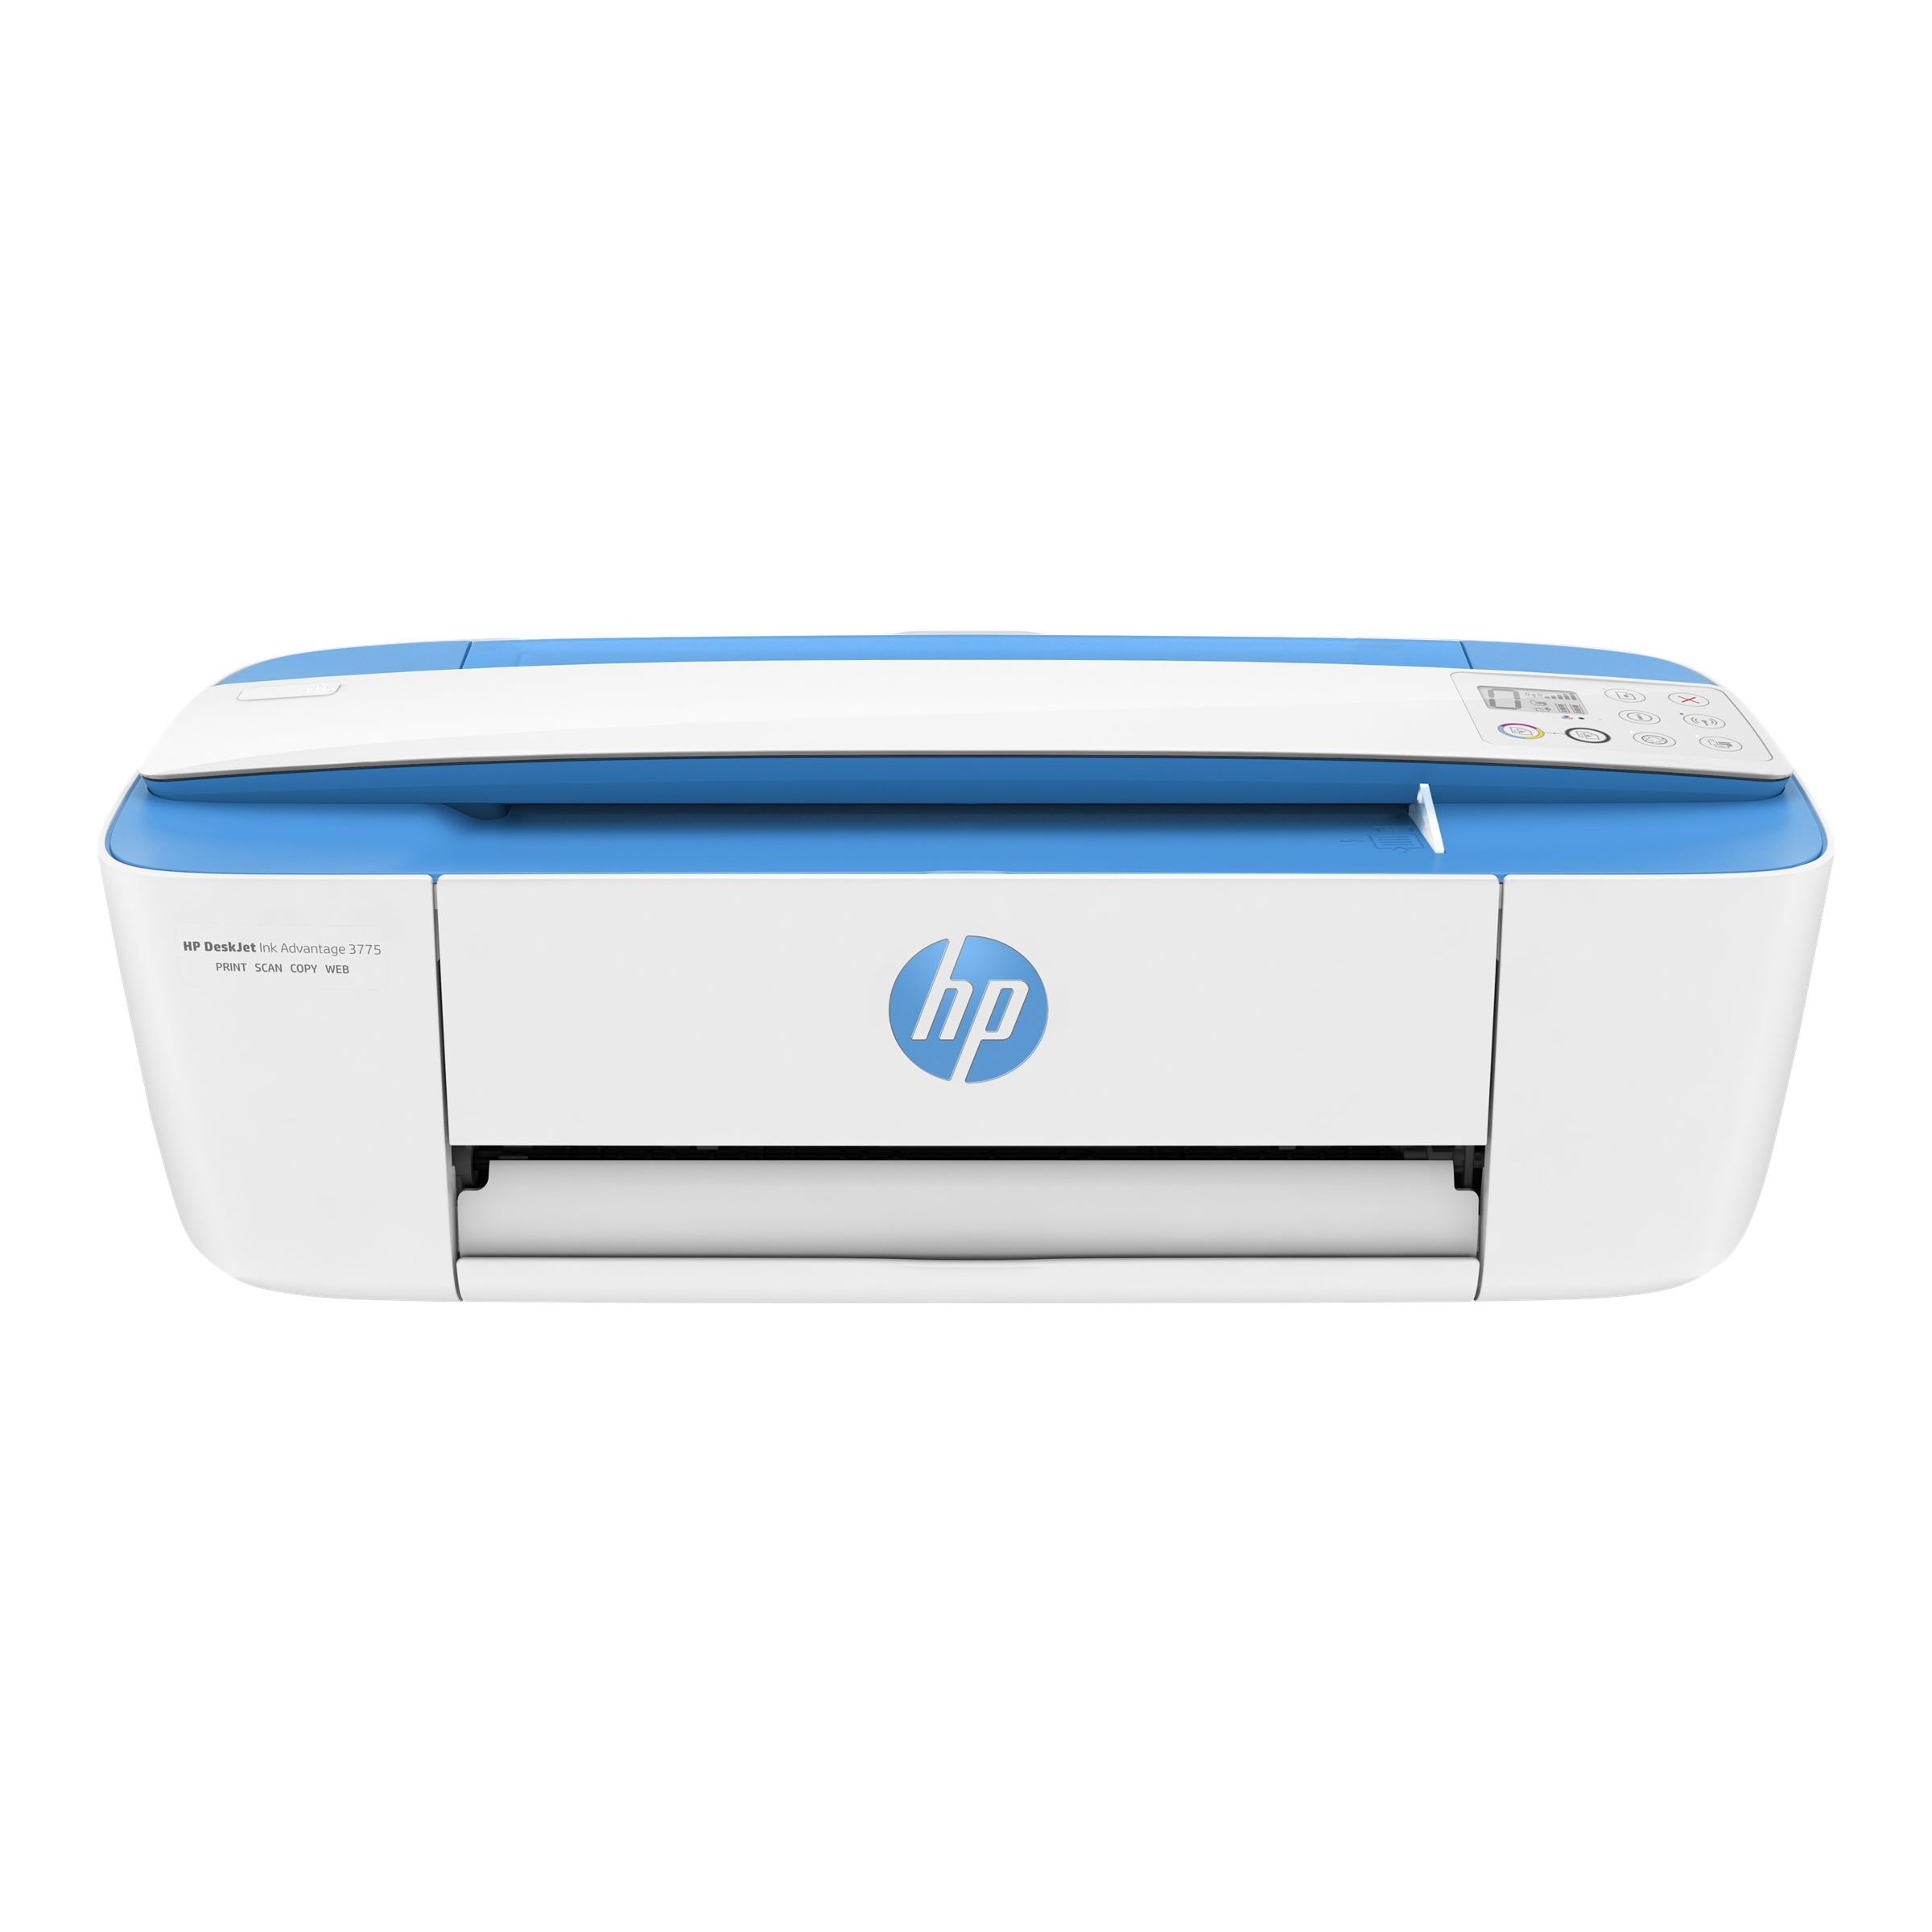 Impresora multifuncion HP -WIFI – USB 2.0